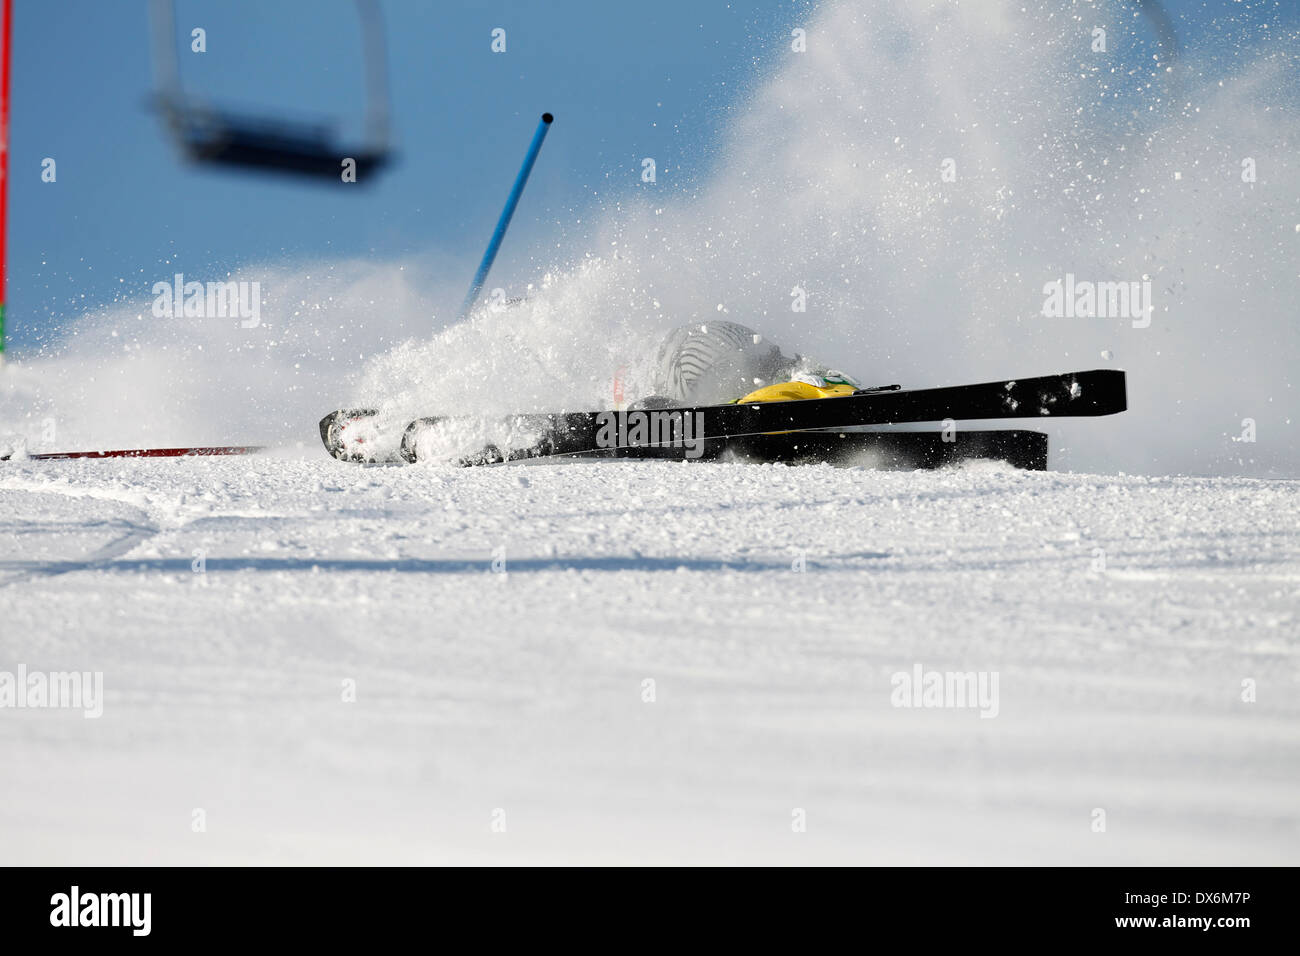 Uno sciatore di neve caduta fuori controllo durante la corsa sul corso di slalom. Foto Stock